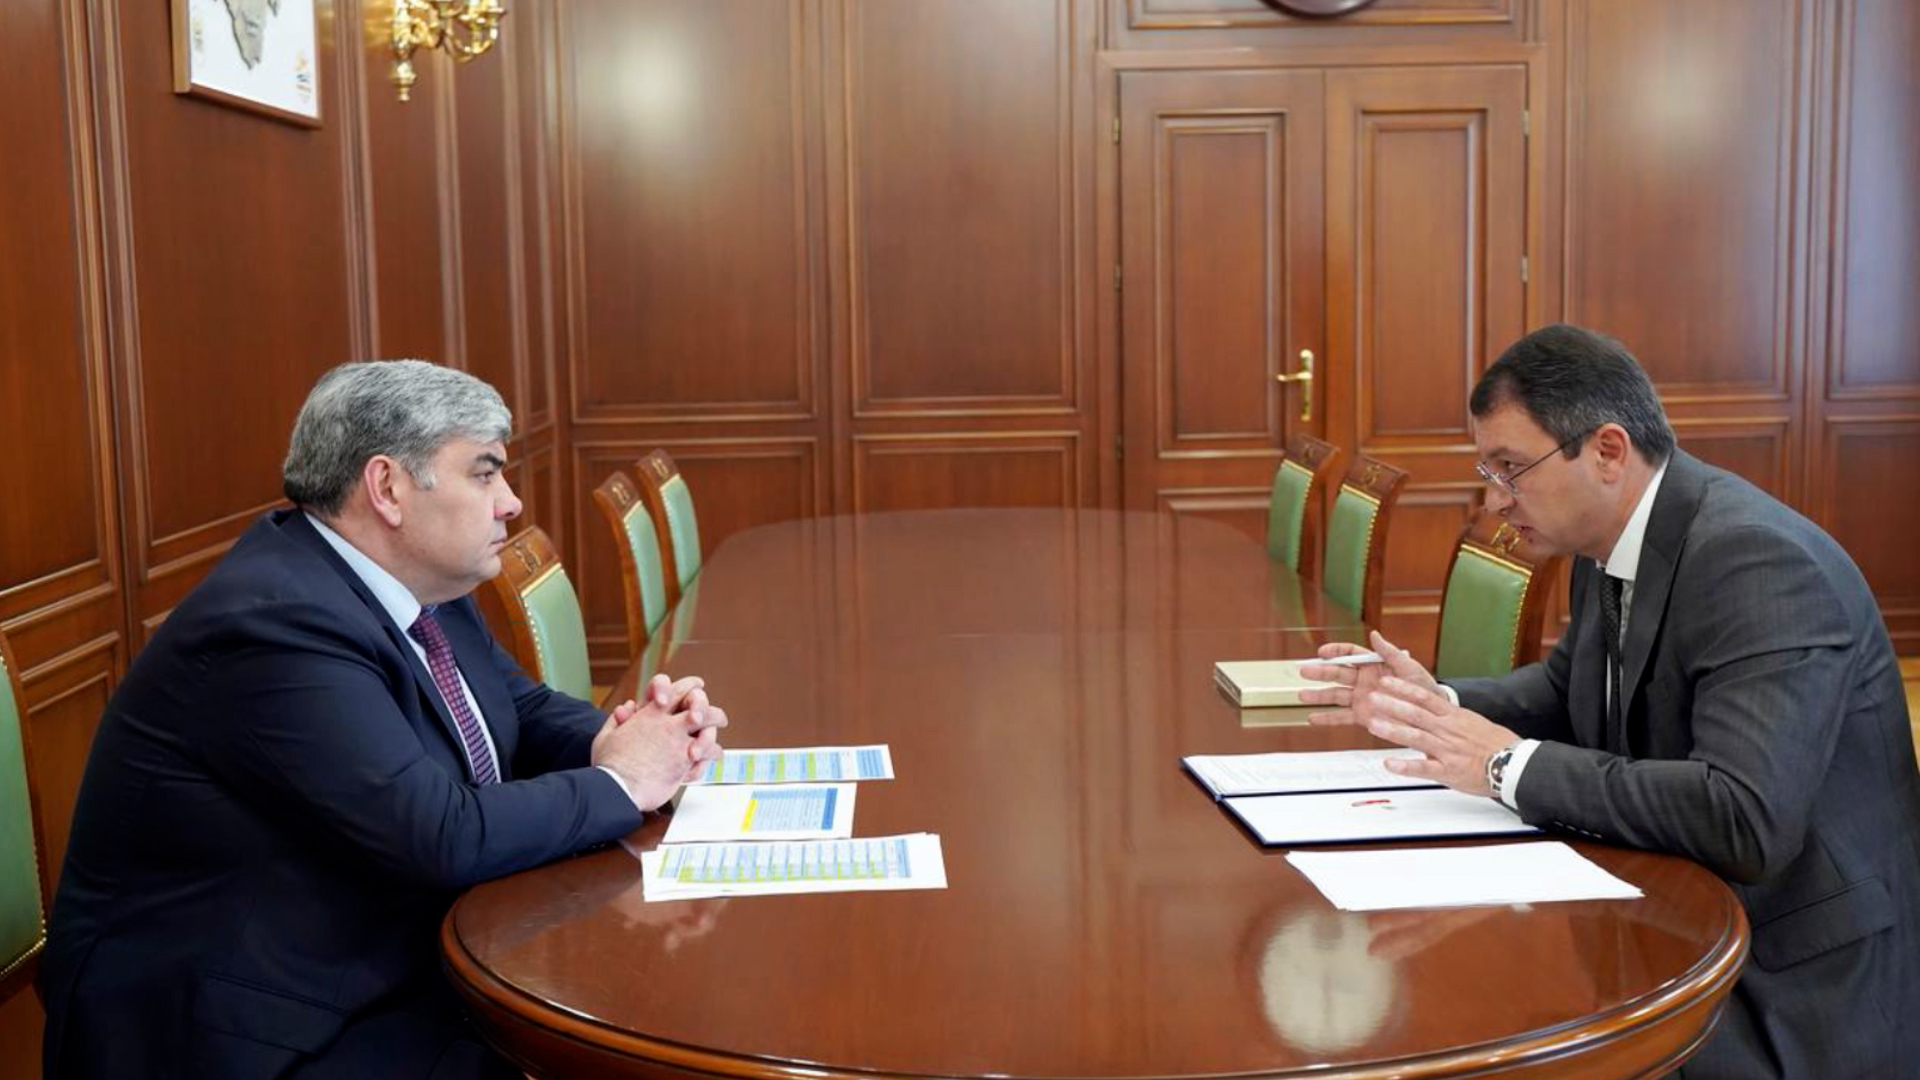 Казбек Коков провел встречу с руководителем Управления Федерального казначейства КБР Шумахо Утижевым